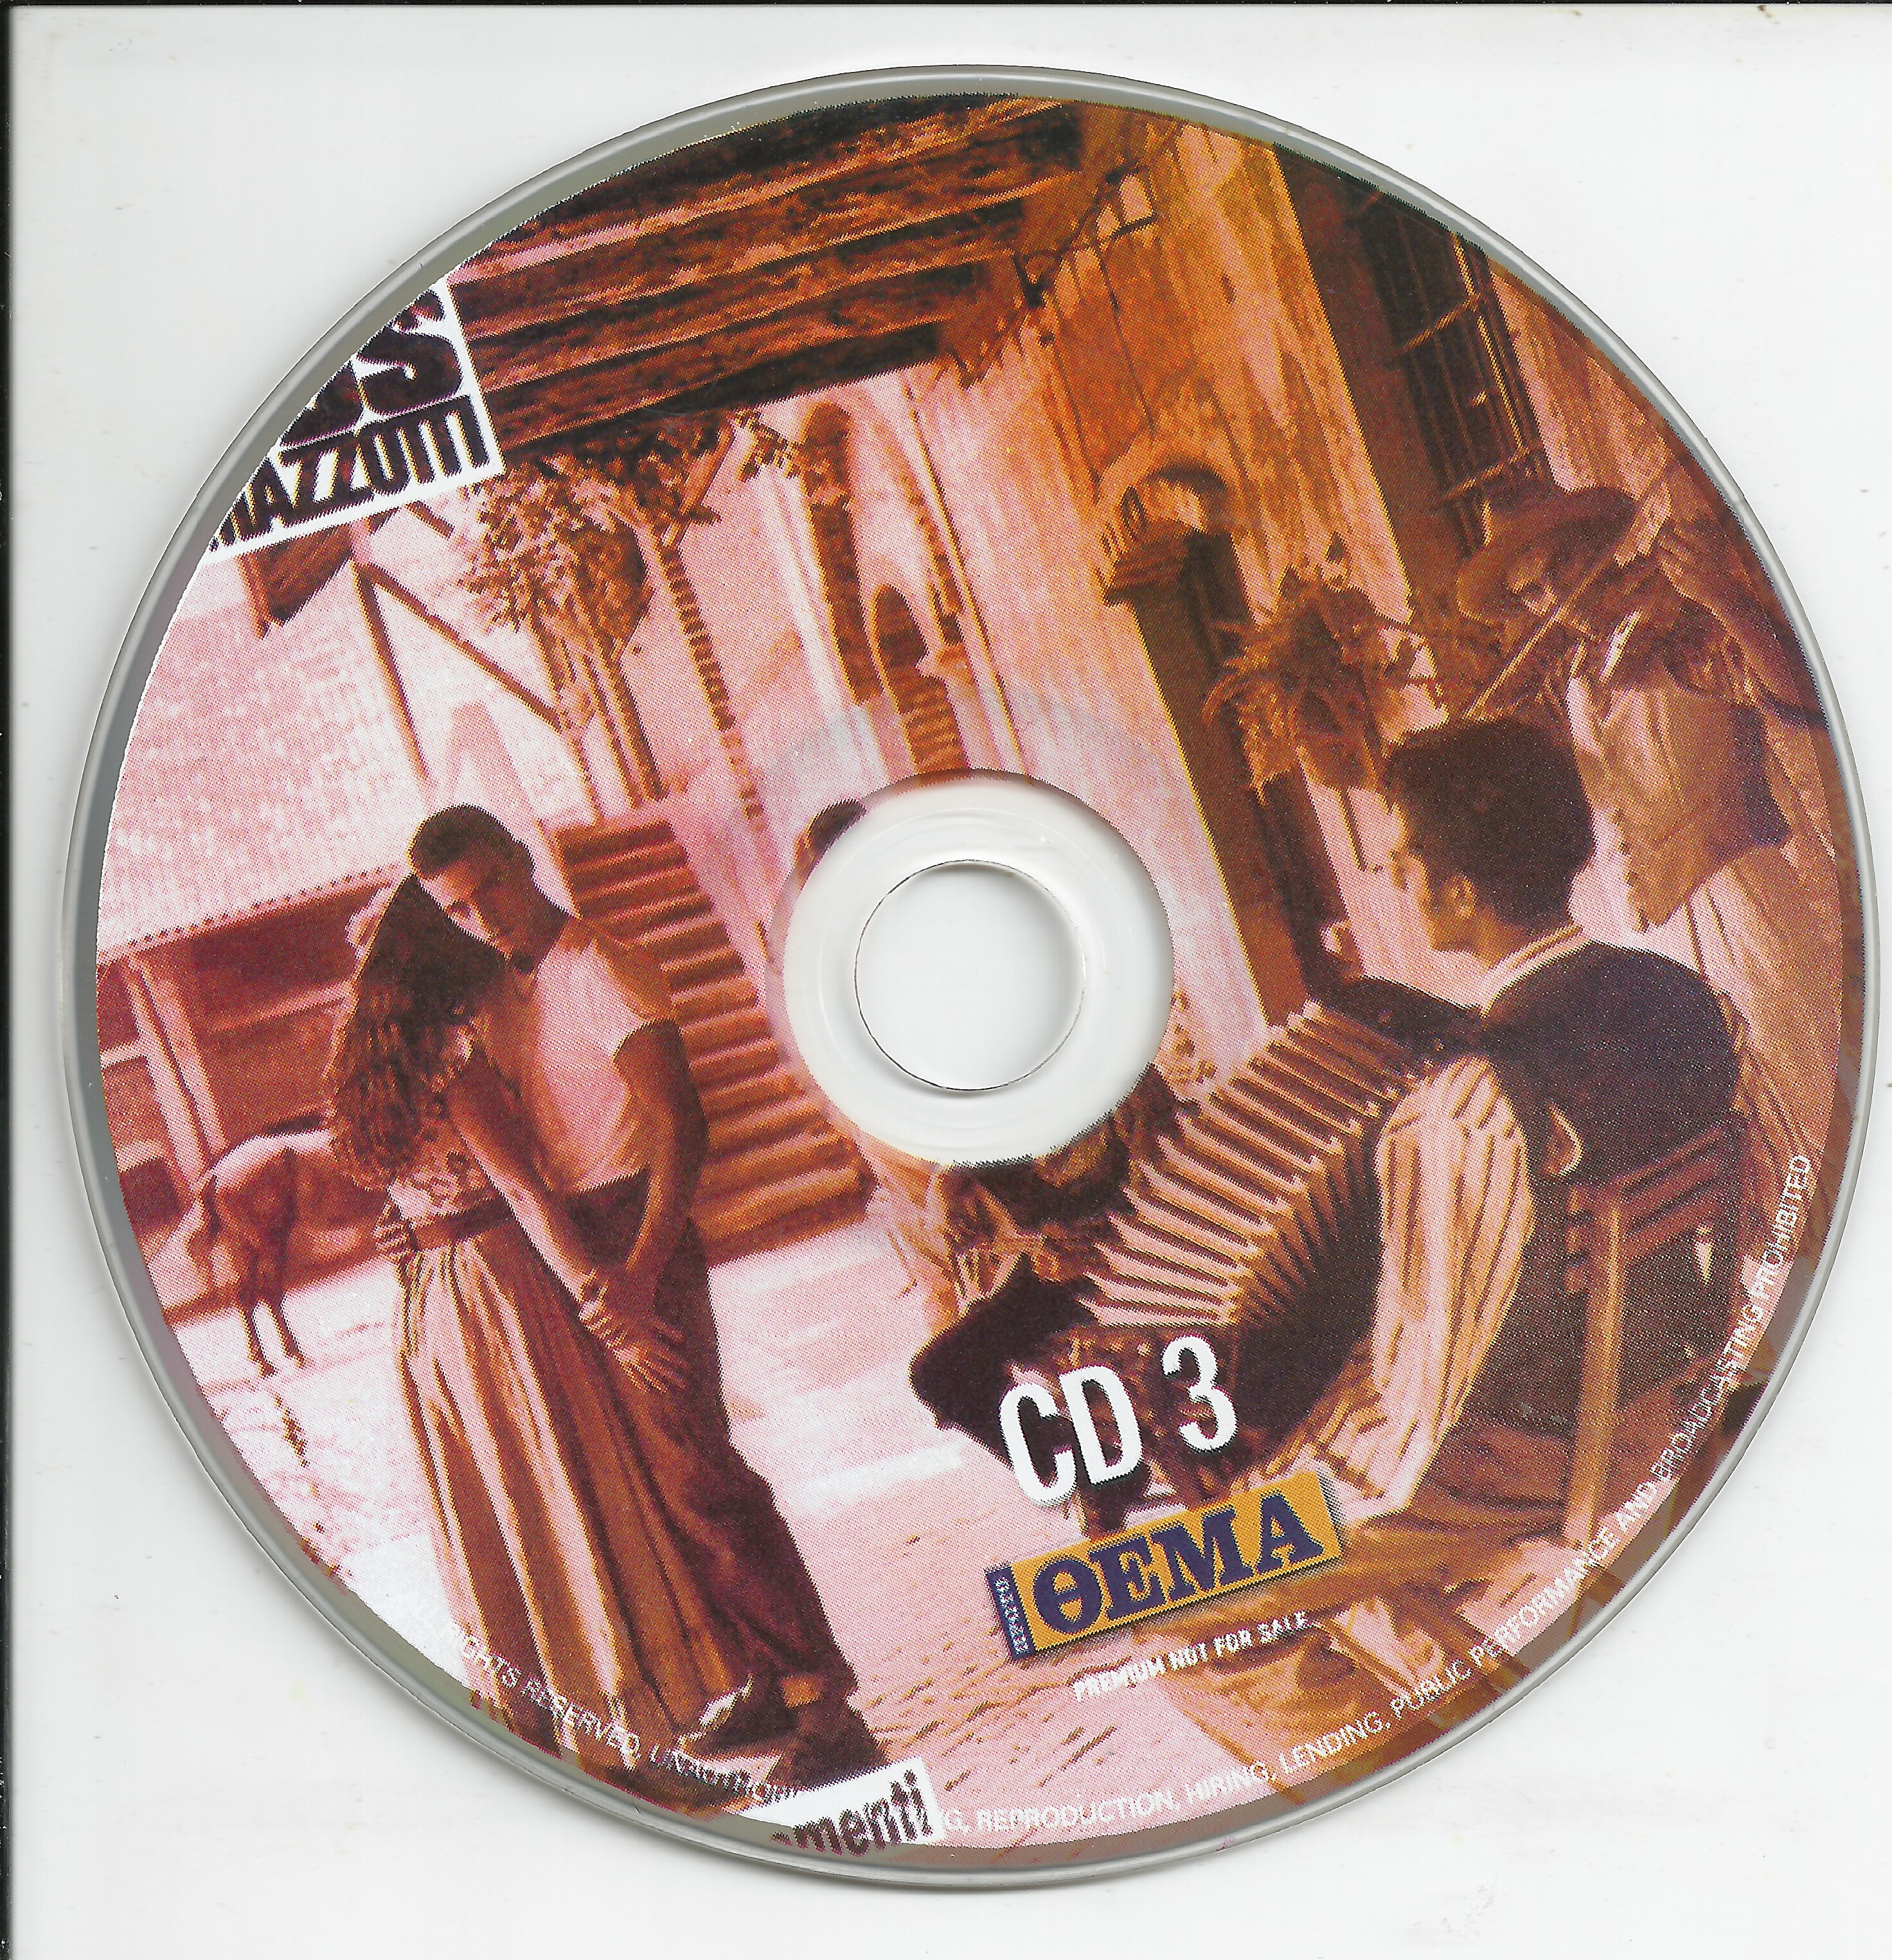 CD3-Eros Ramazzotti-12 - CD3.jpg